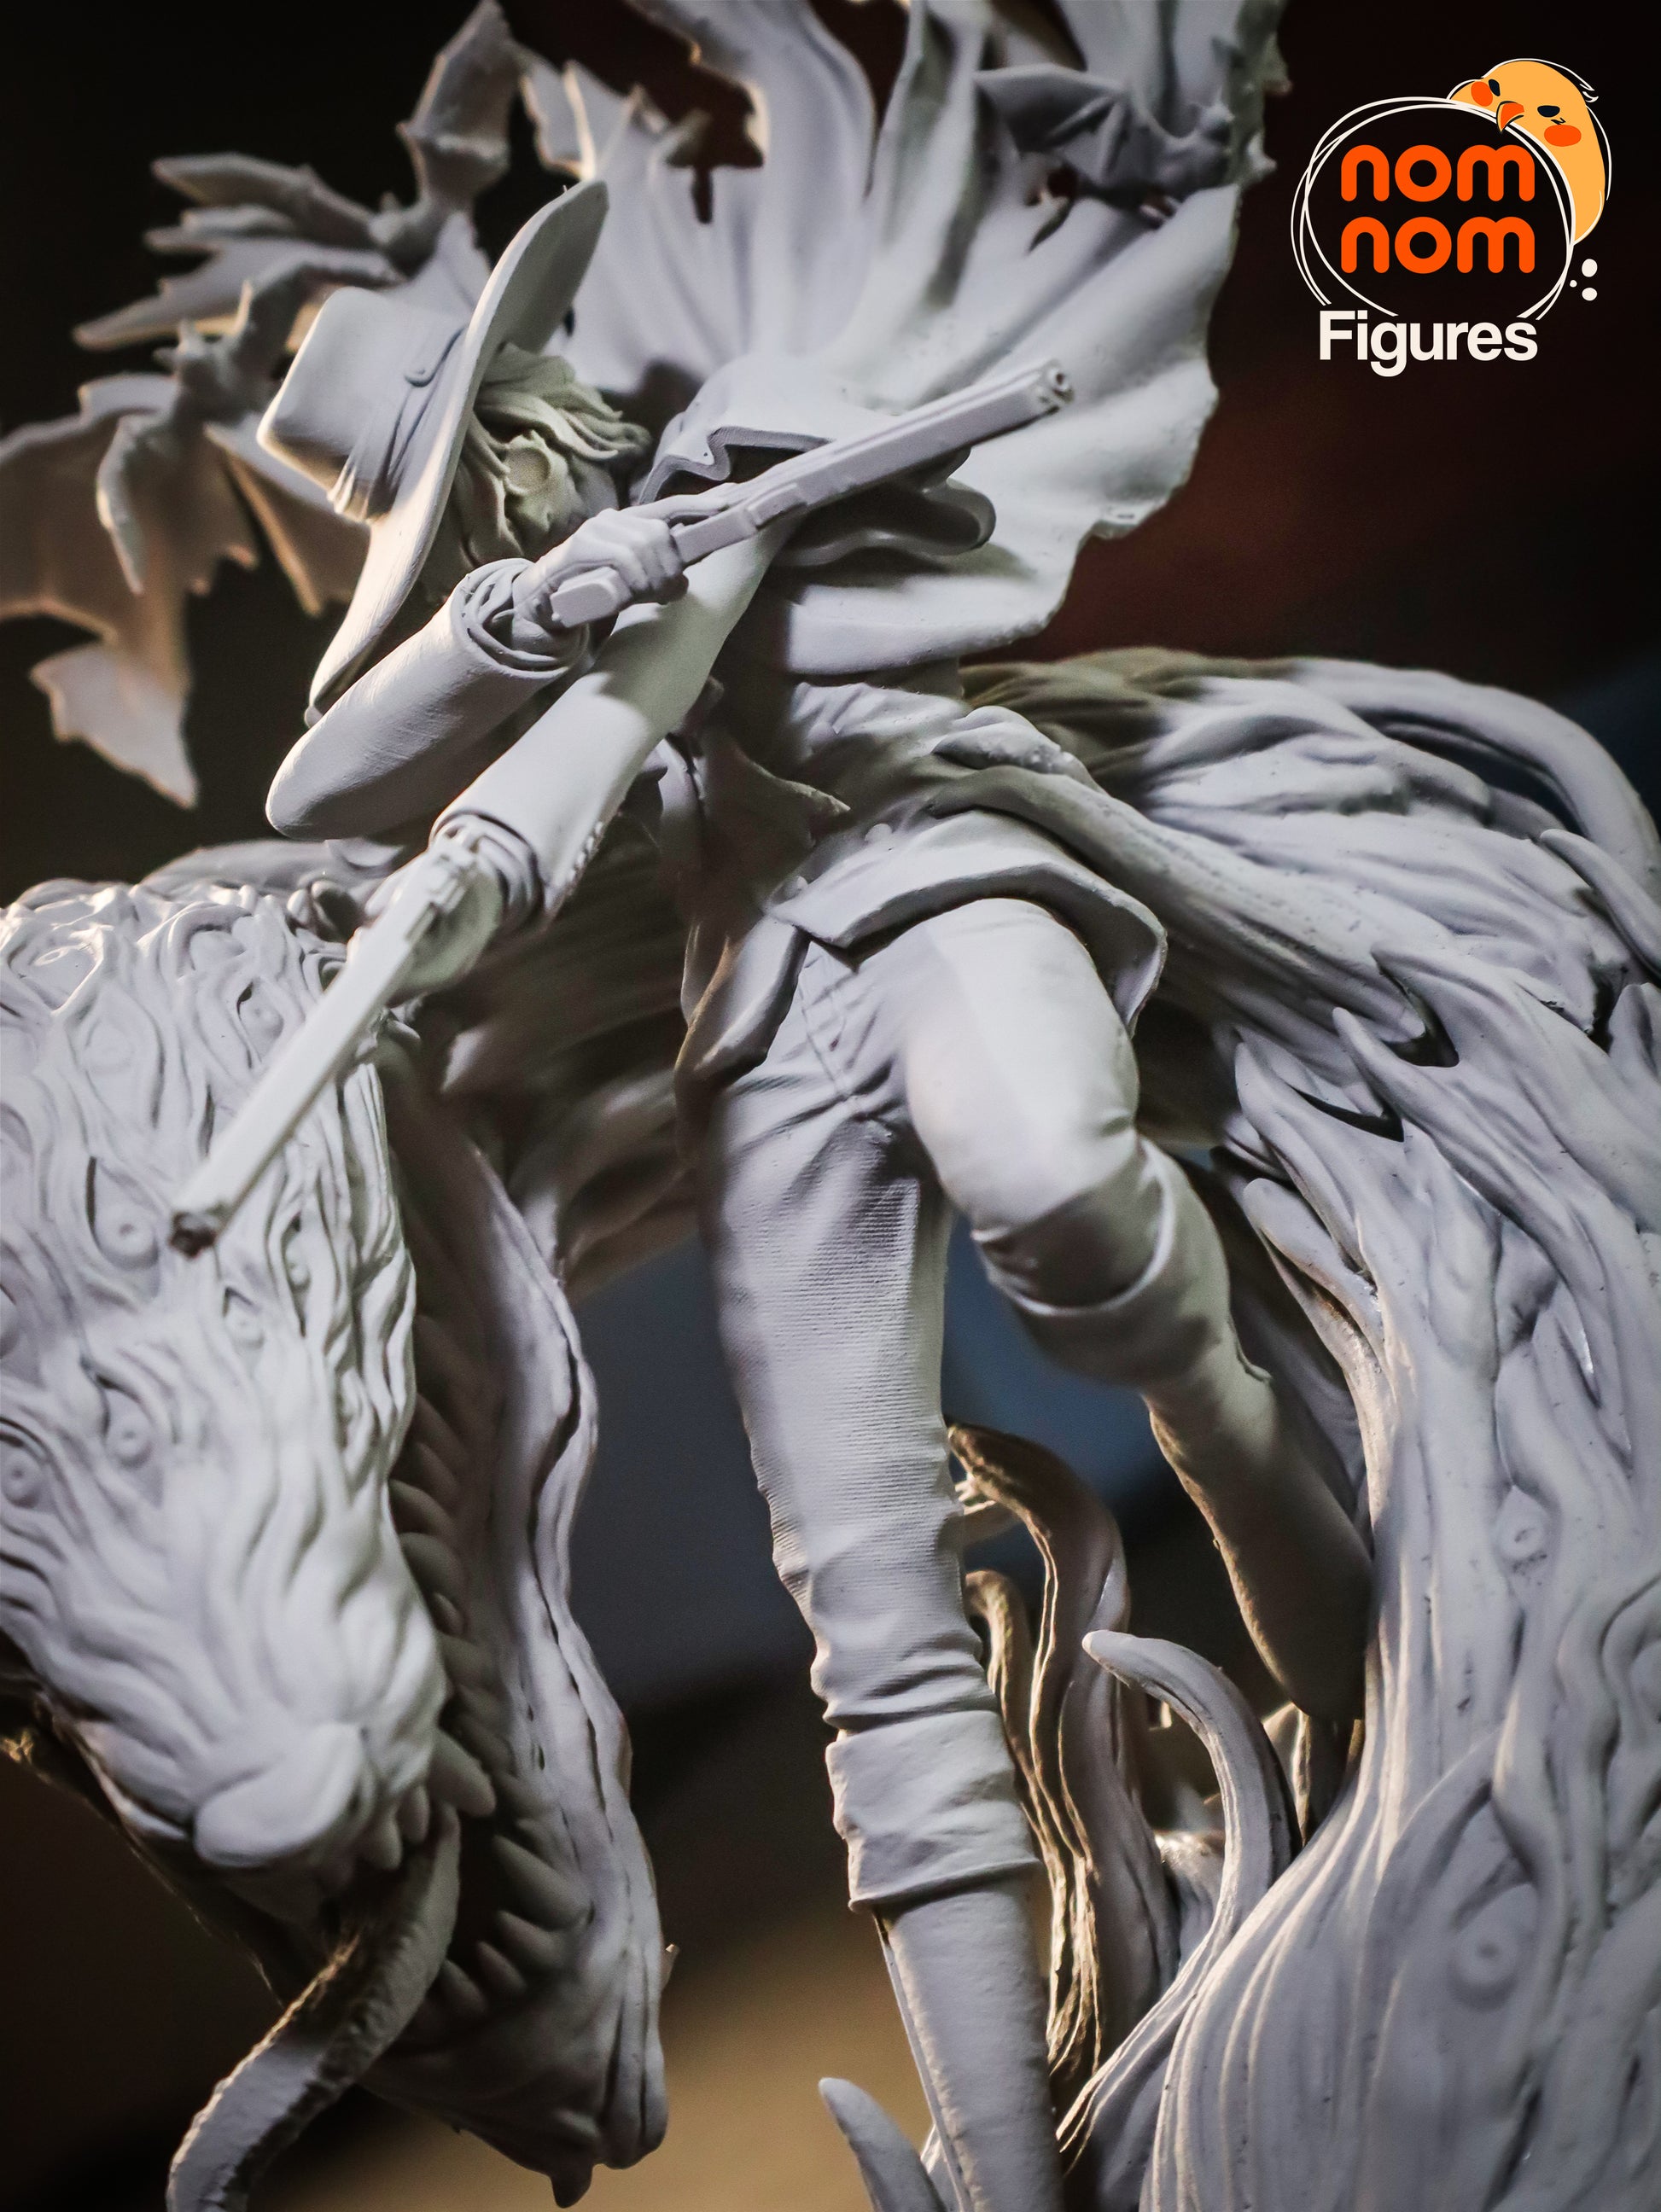 Legendary Vampire | Resin Garage Kit Sculpture Anime Statue | Nomnom Figures - Tattles Told 3D